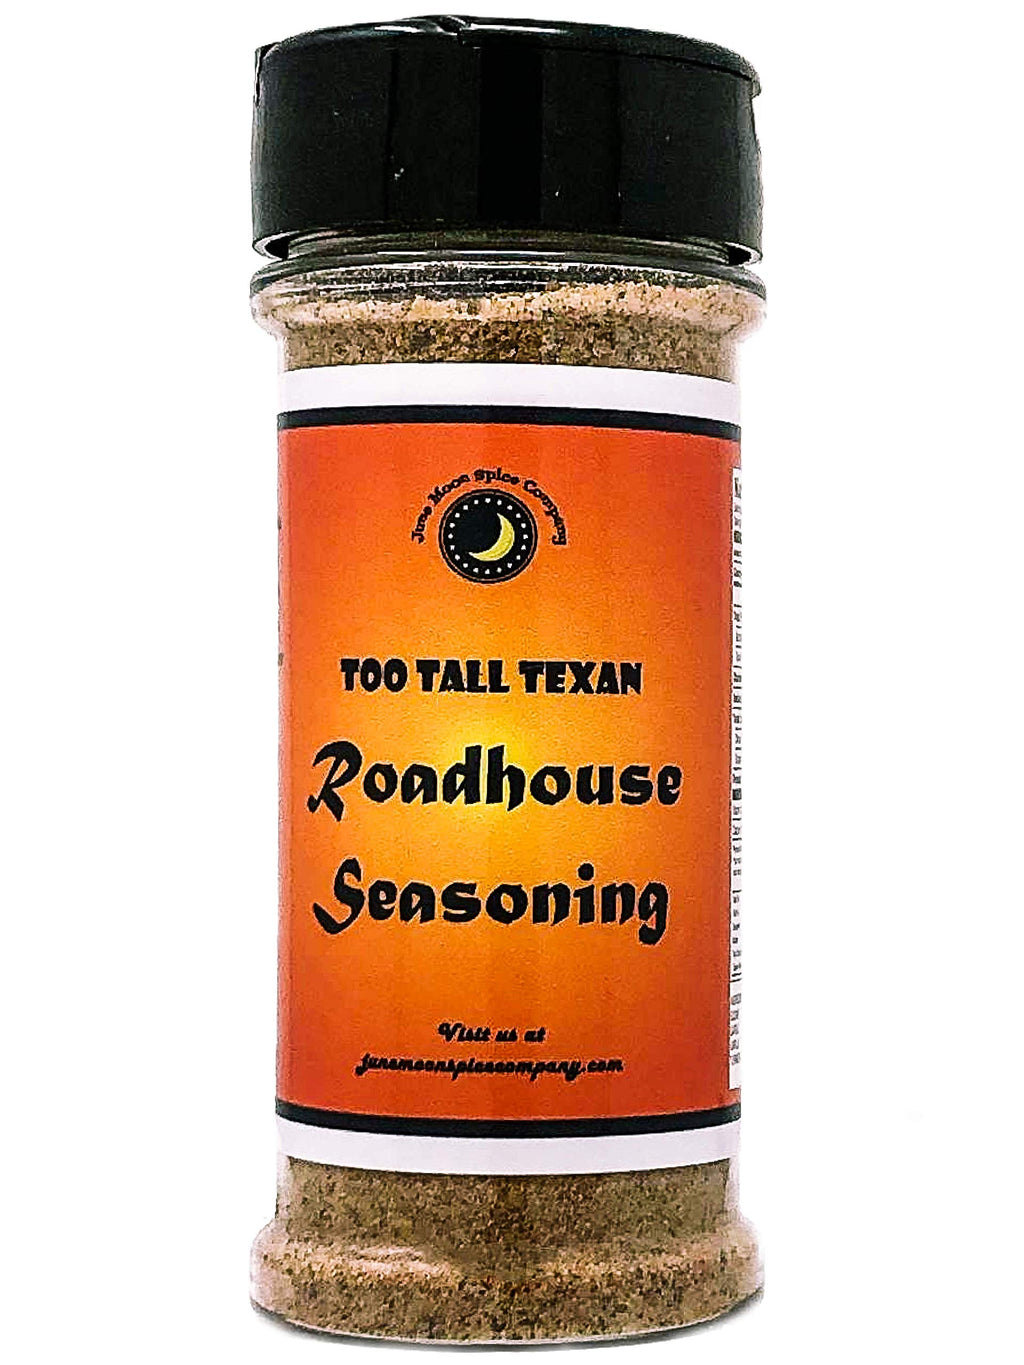 Too Tall Texan Roadhouse Dry Rub Seasoning